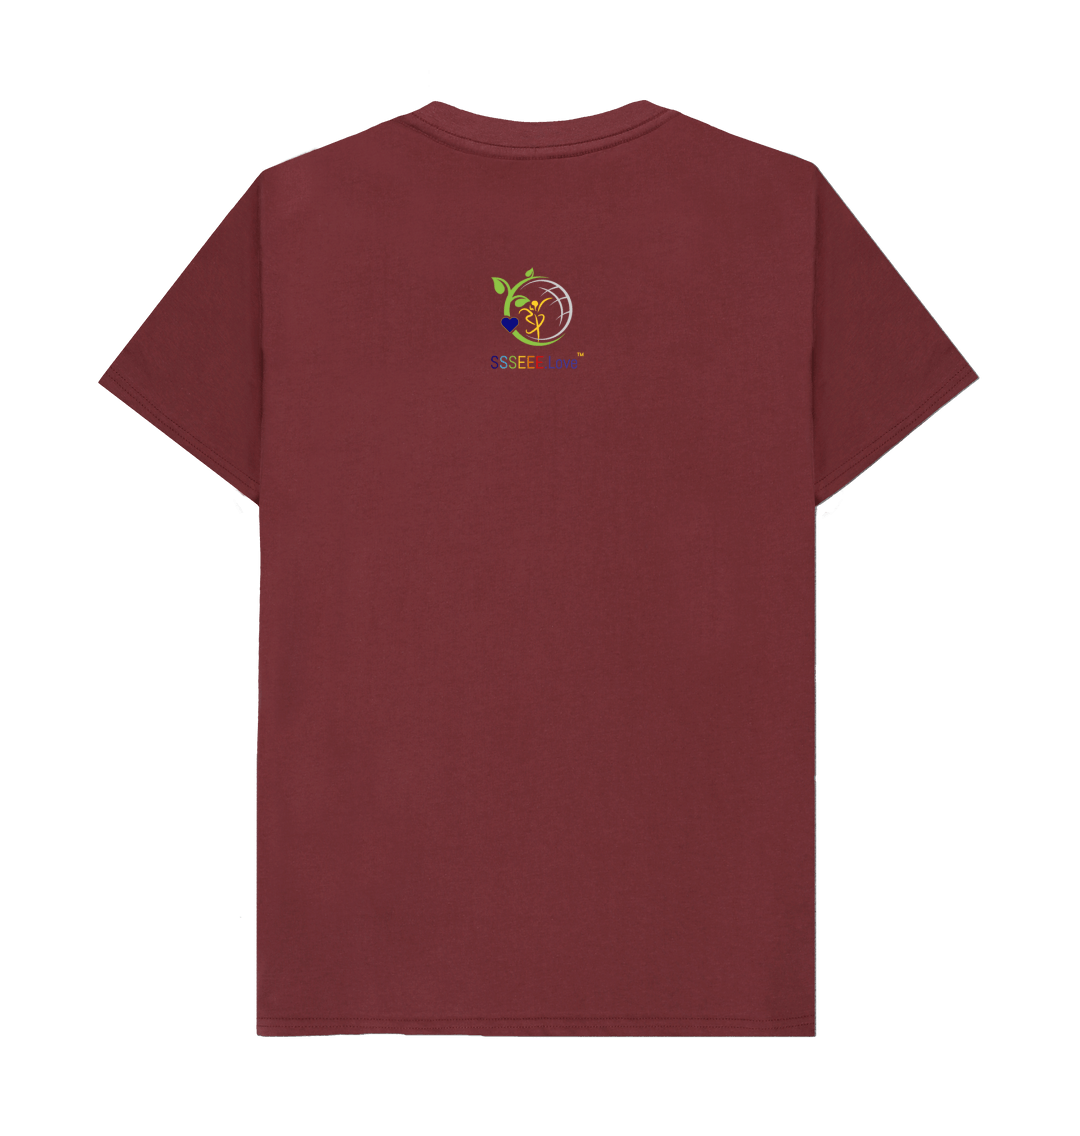 Basics - Men's Ethical T-shirt, t-shirt